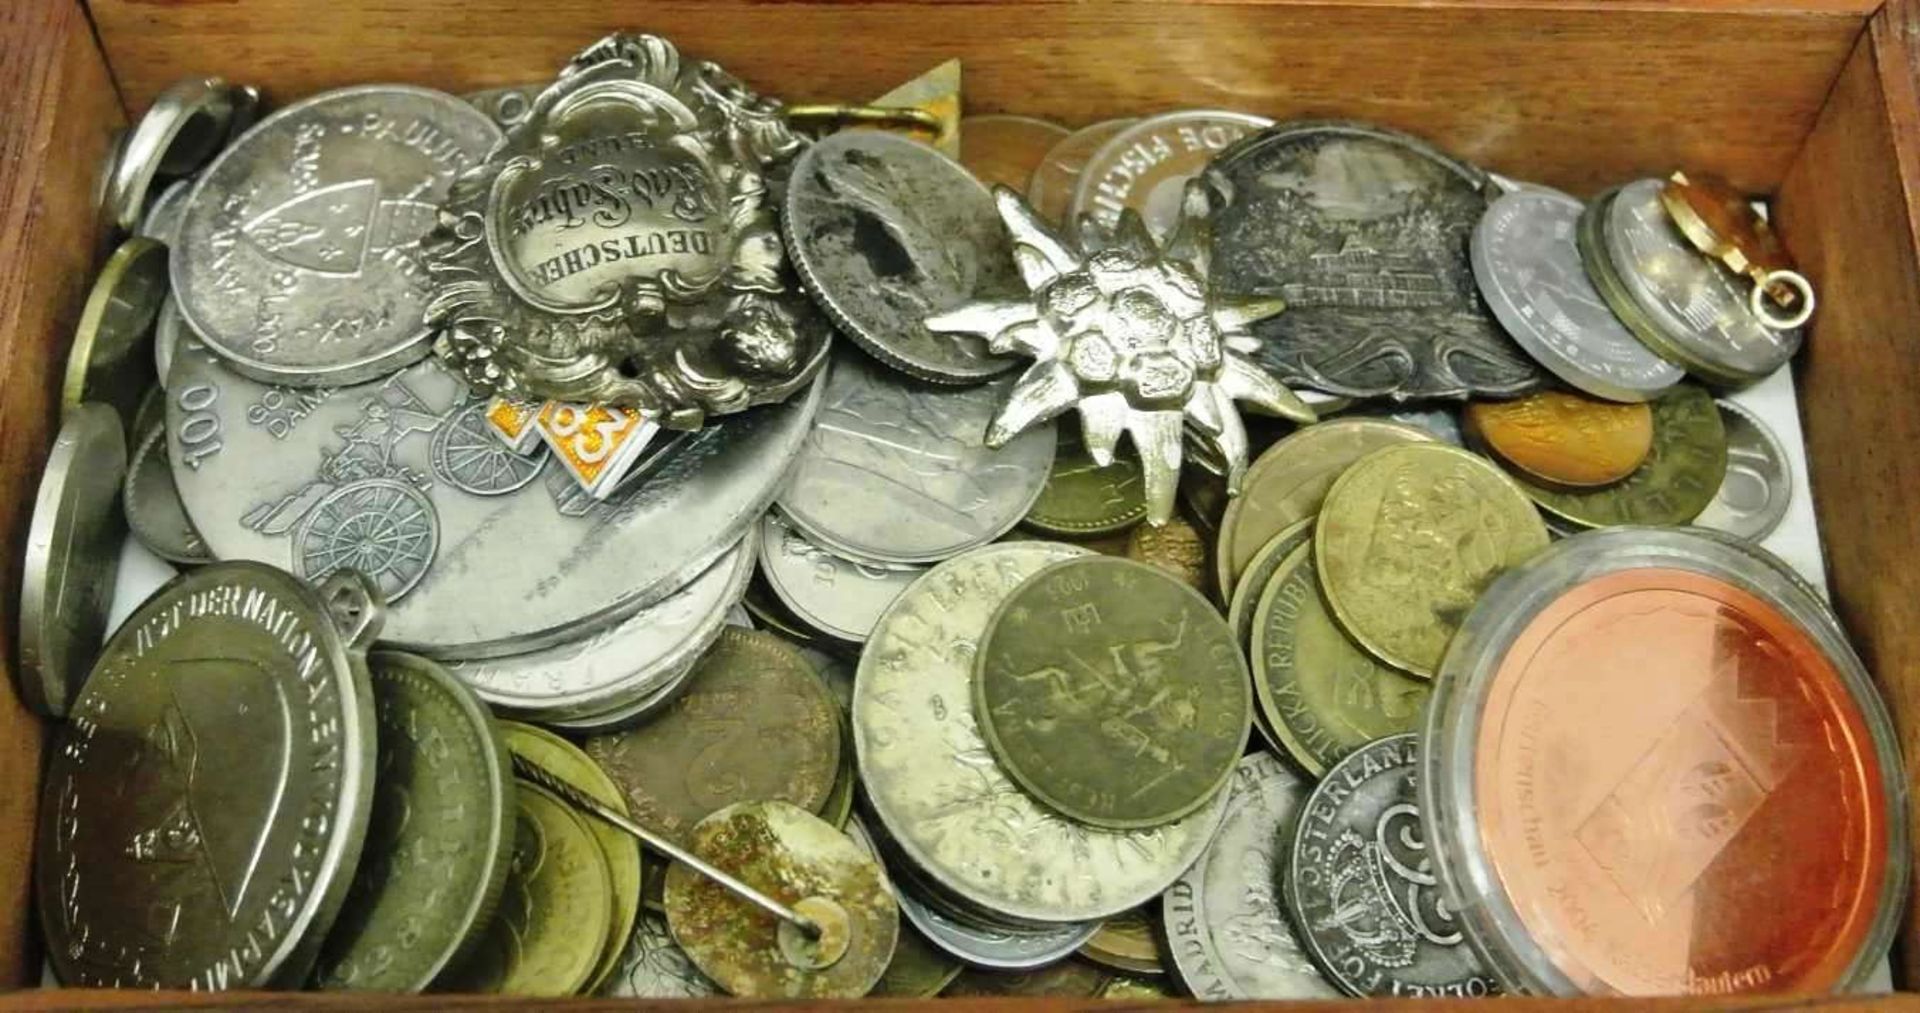 Lot Münzen und Medaillen in einer Holzkiste, dabei auch etwas Silber. Bitte besichtigen